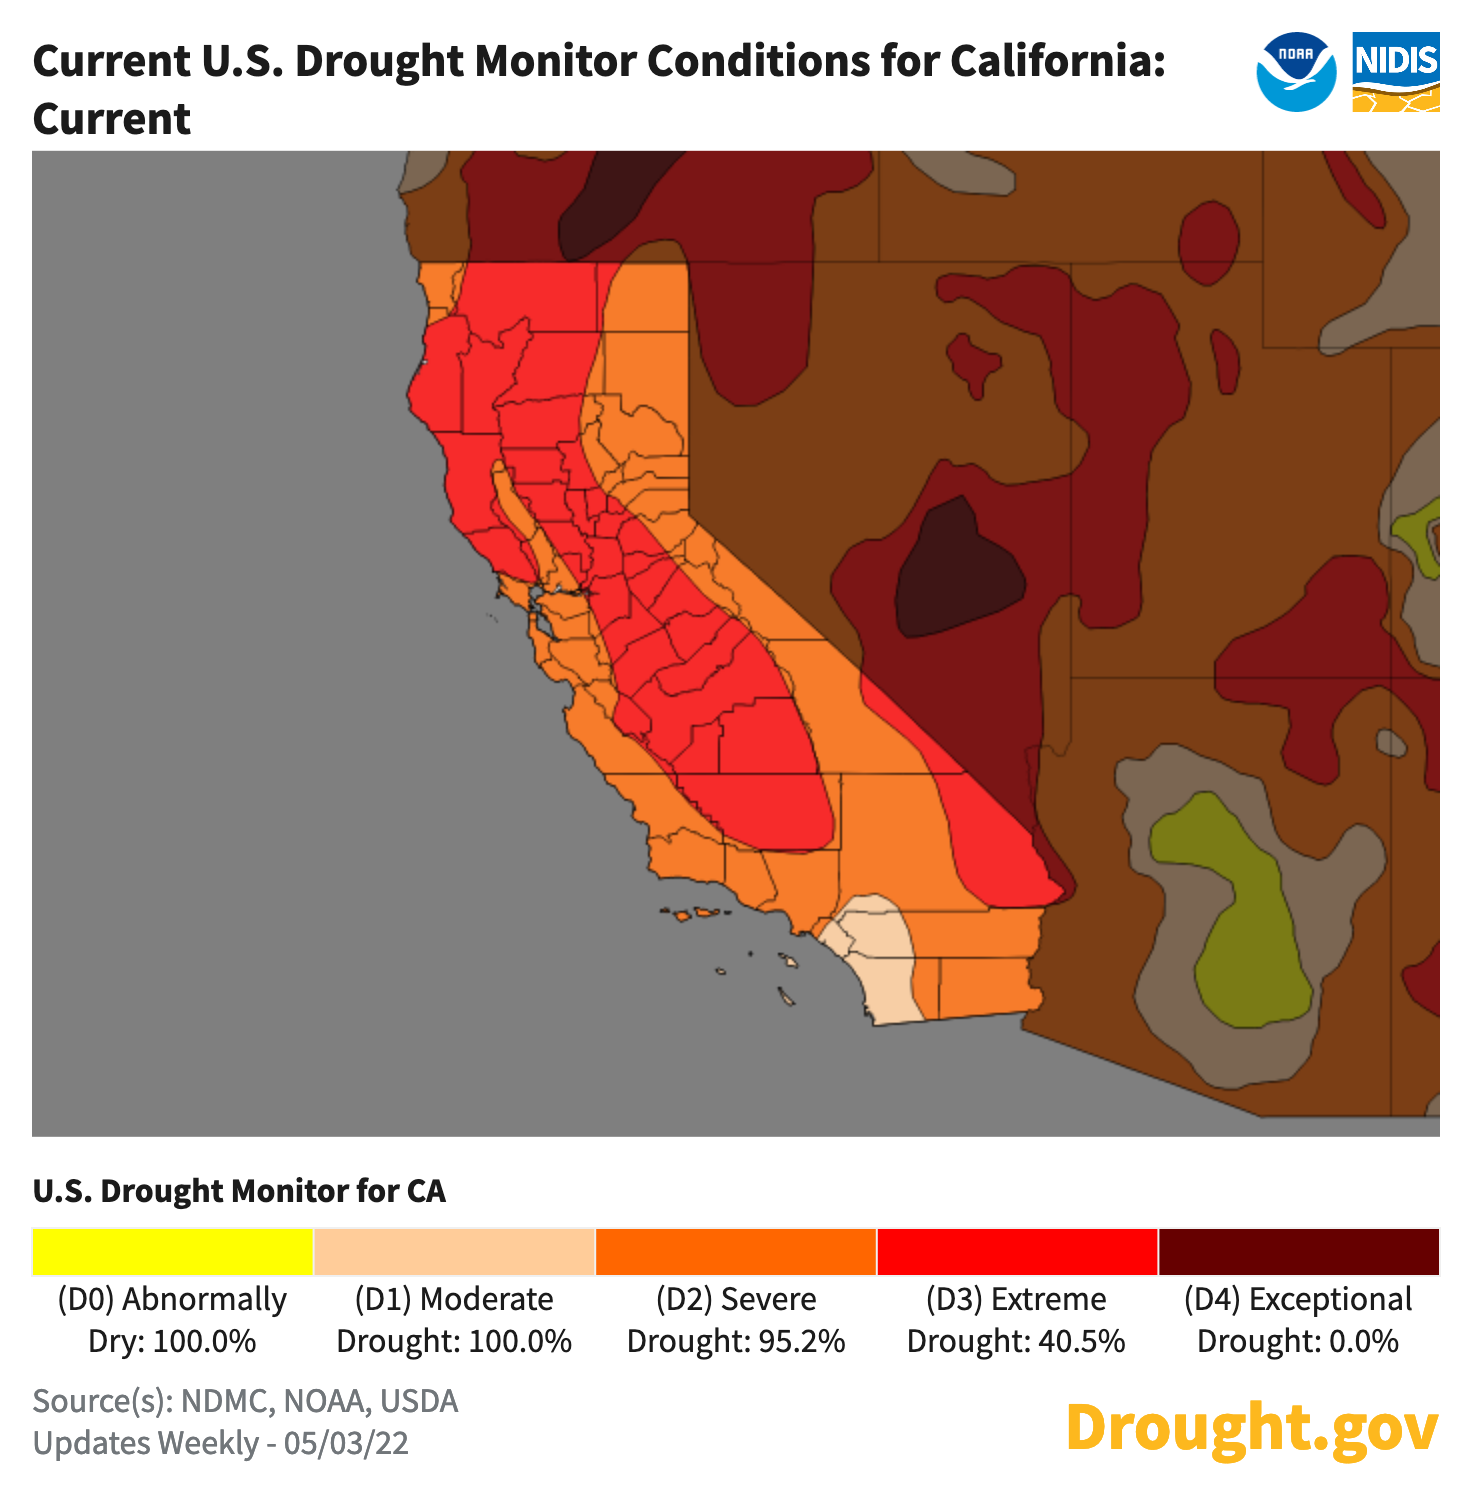 Condiciones de la sequía en California al 3 de mayo de 2022